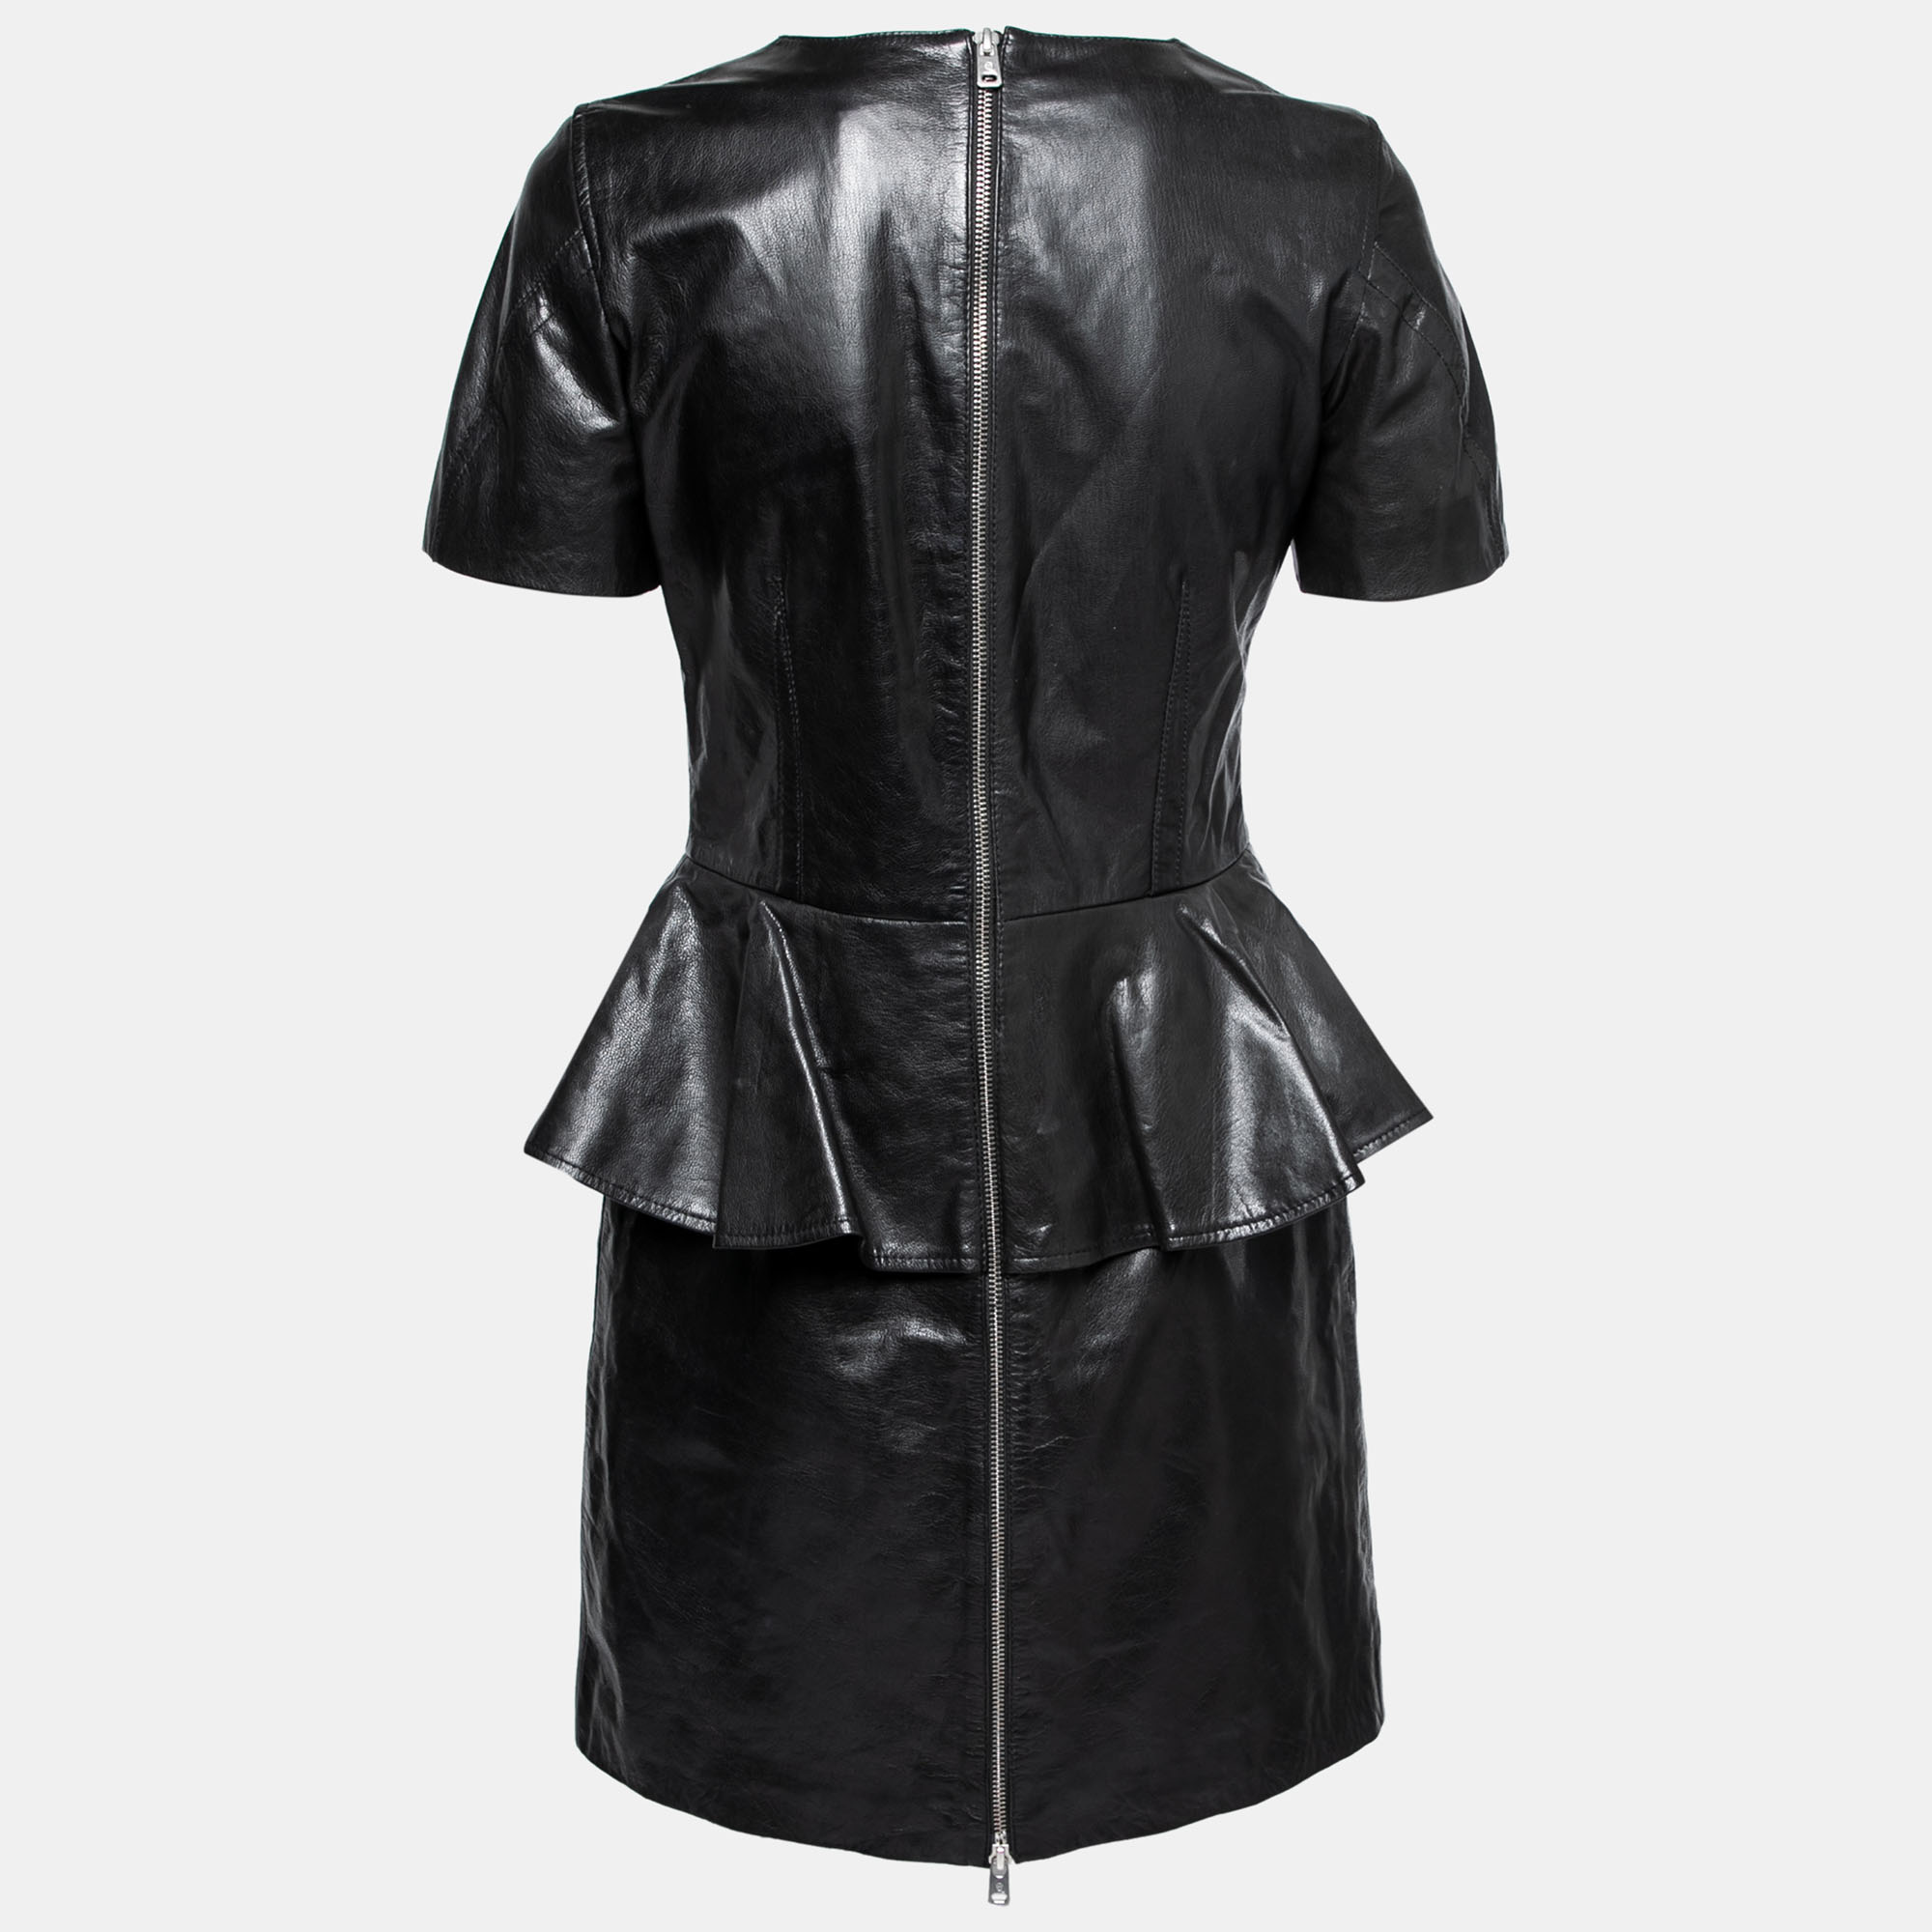 

McQ by Alexander McQueen Black Leather Short Sleeve Peplum Dress